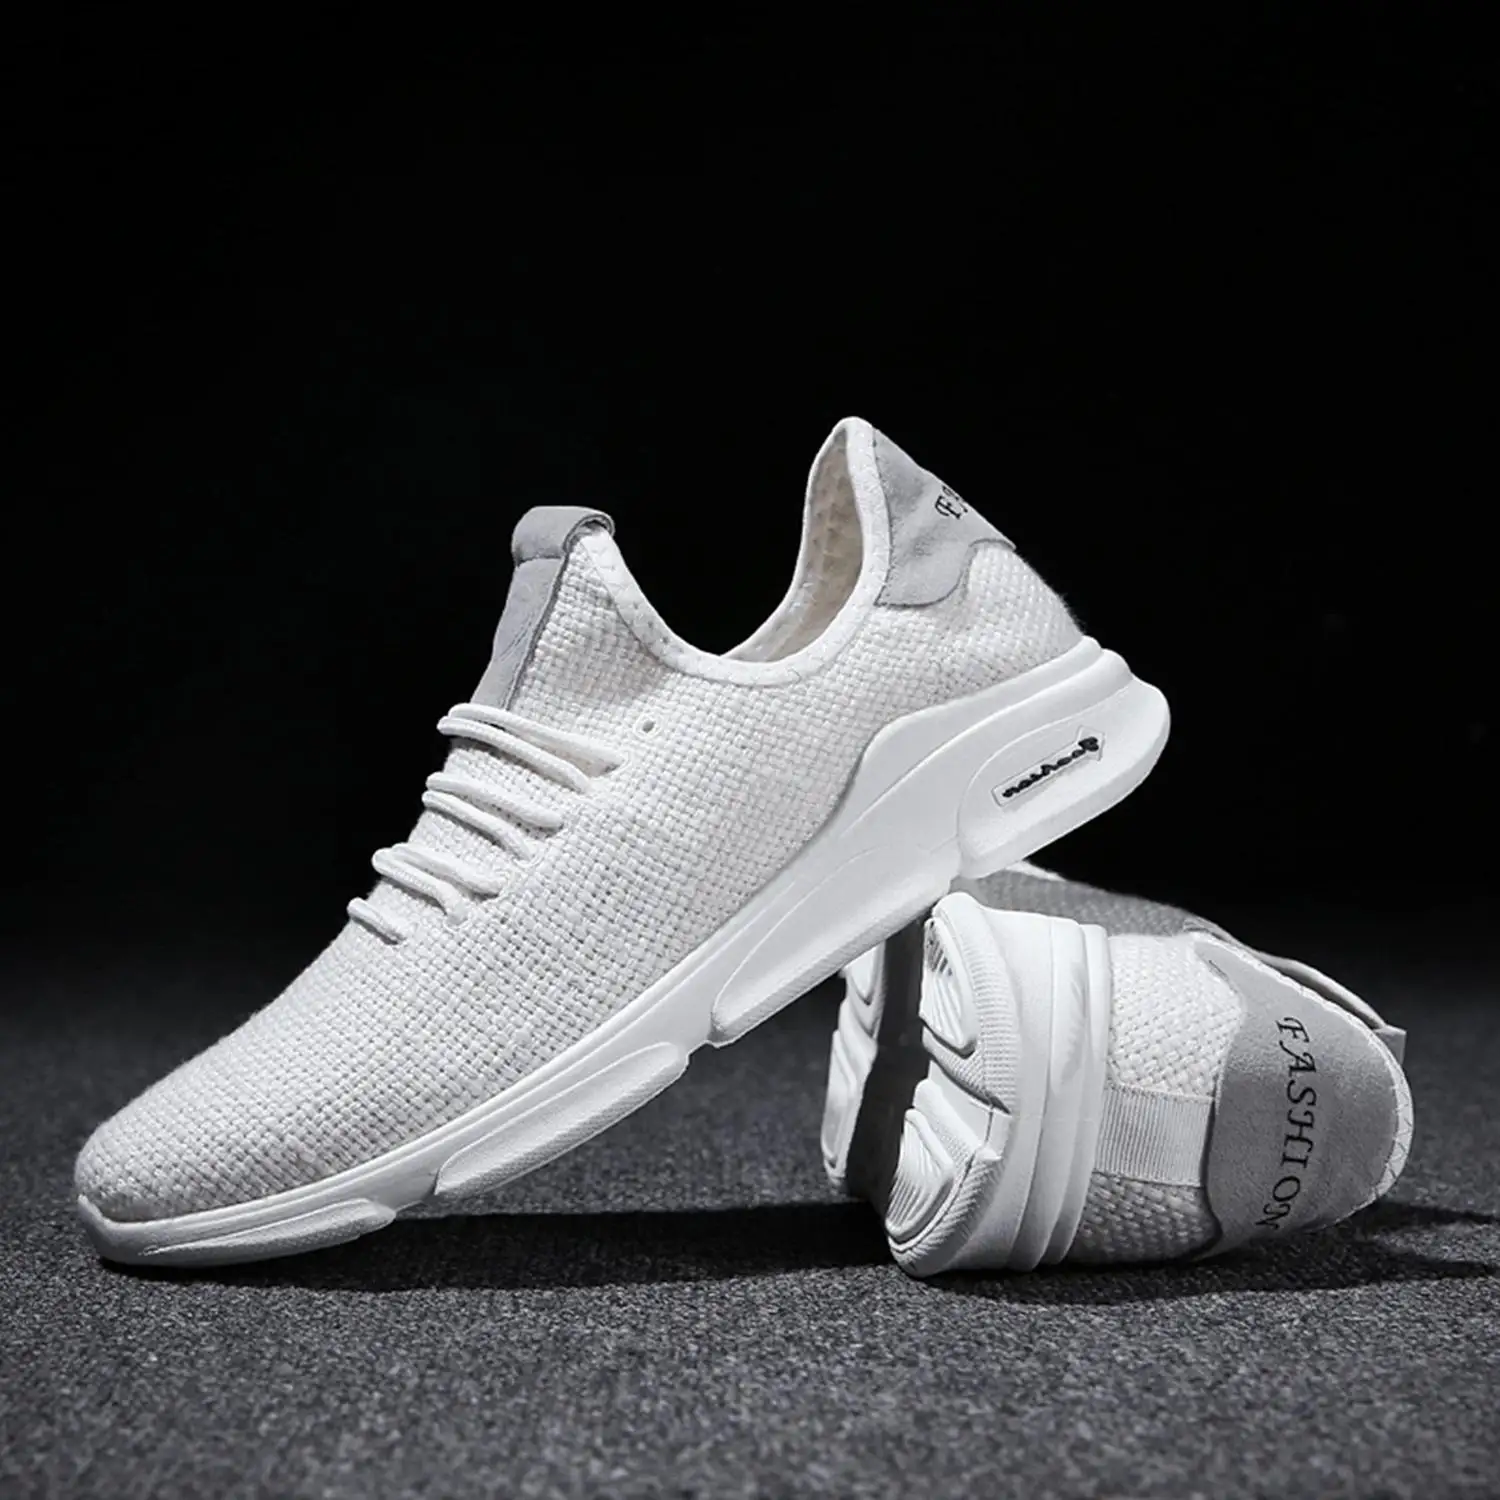 LGFM-Льняная сетчатая дышащая мужская обувь для бега, мужские кроссовки для прогулок, удобные кроссовки для бега, мягкие, удобные для носки на весну/лето